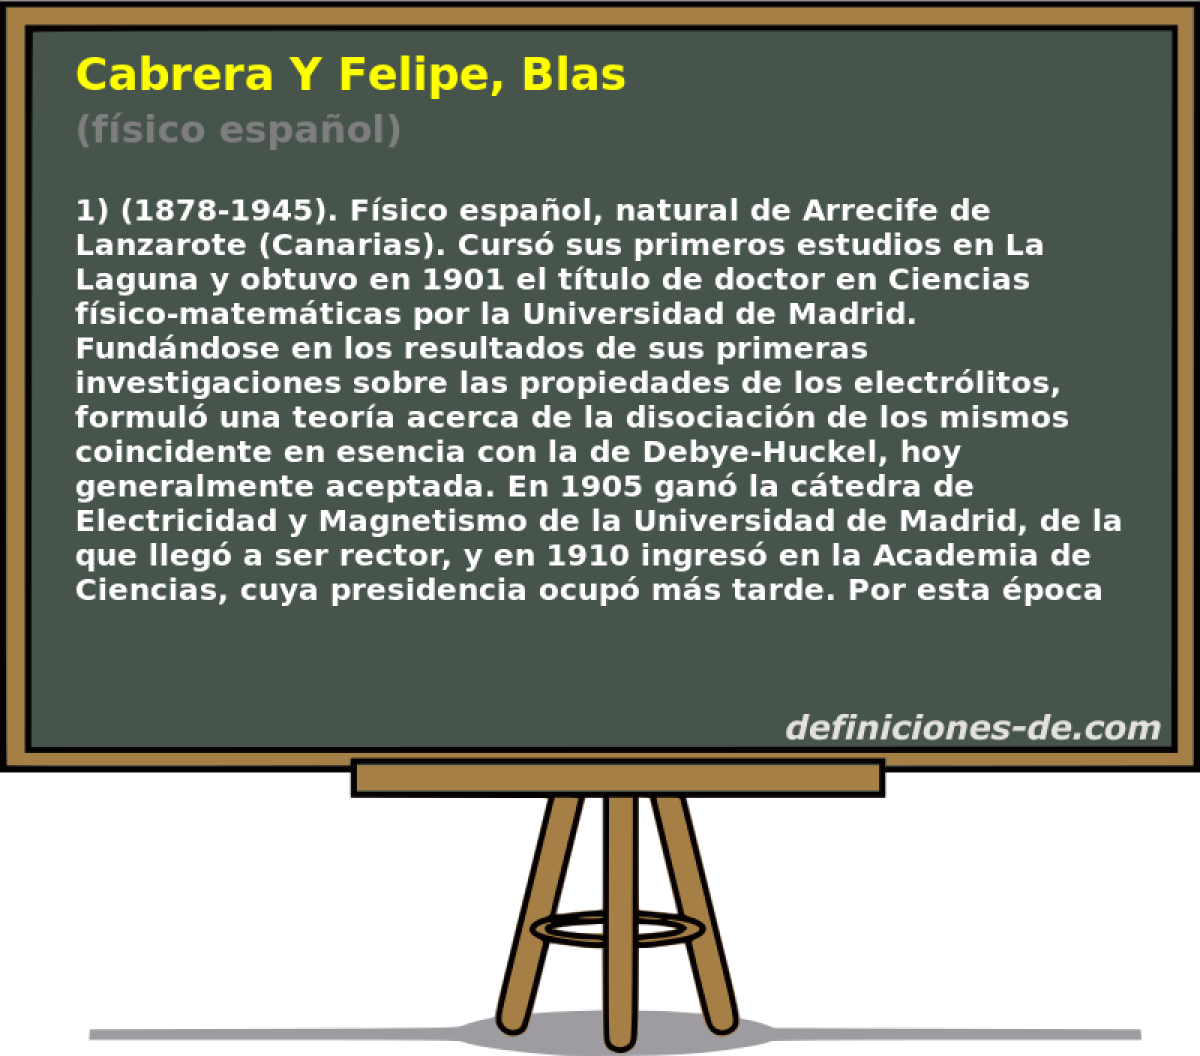 Cabrera Y Felipe, Blas (fsico espaol)